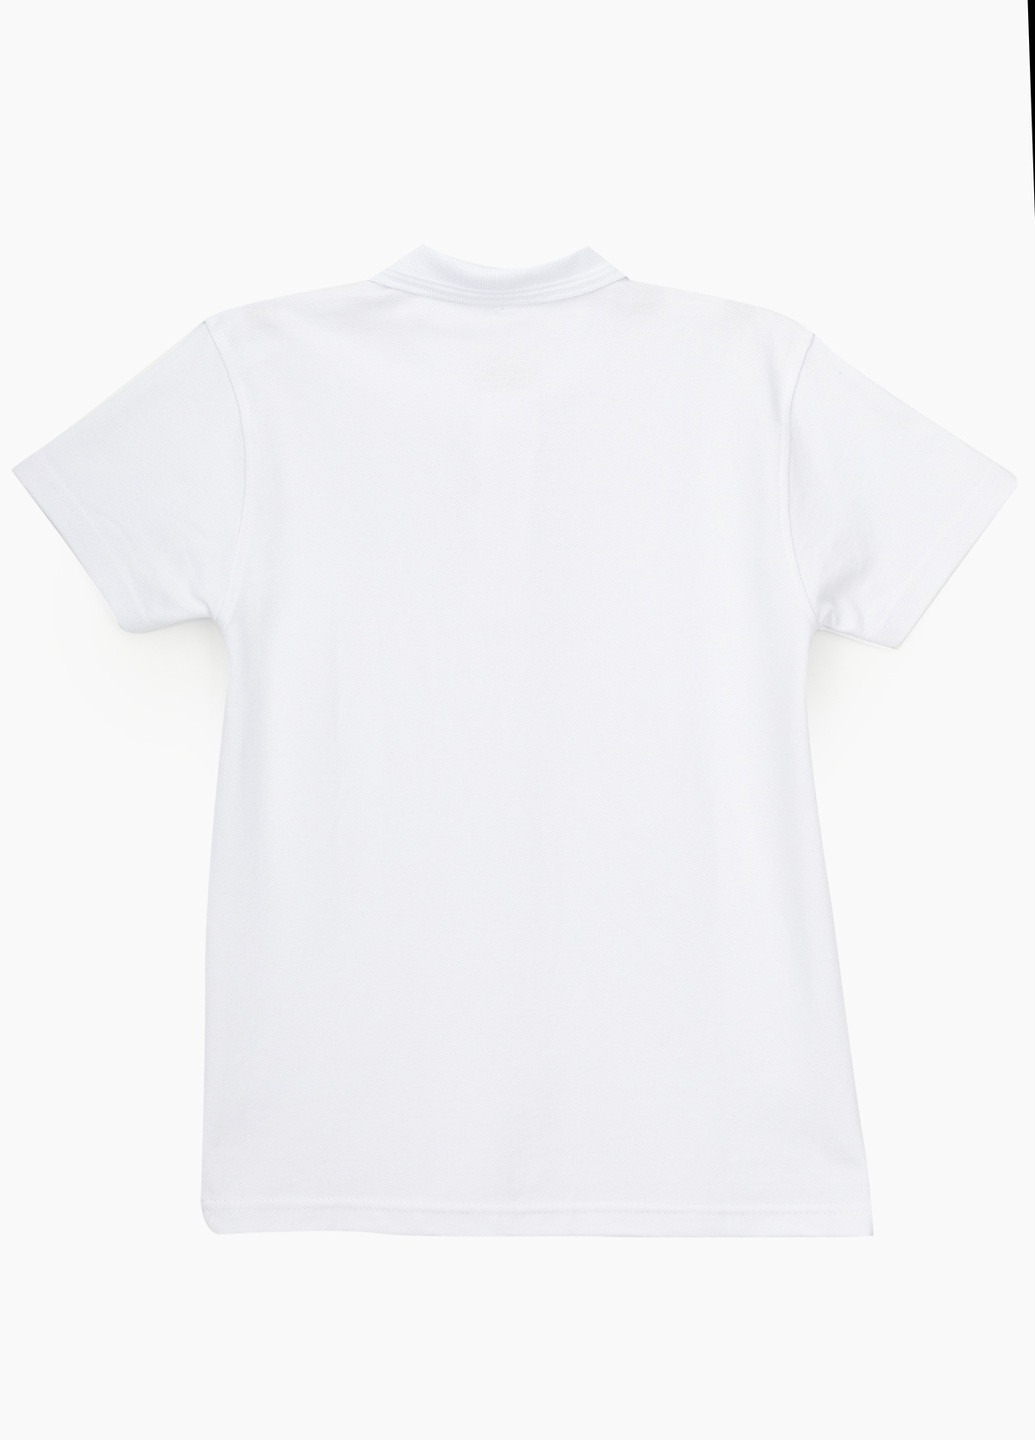 Белая детская футболка-поло для мальчика Pitiki однотонная